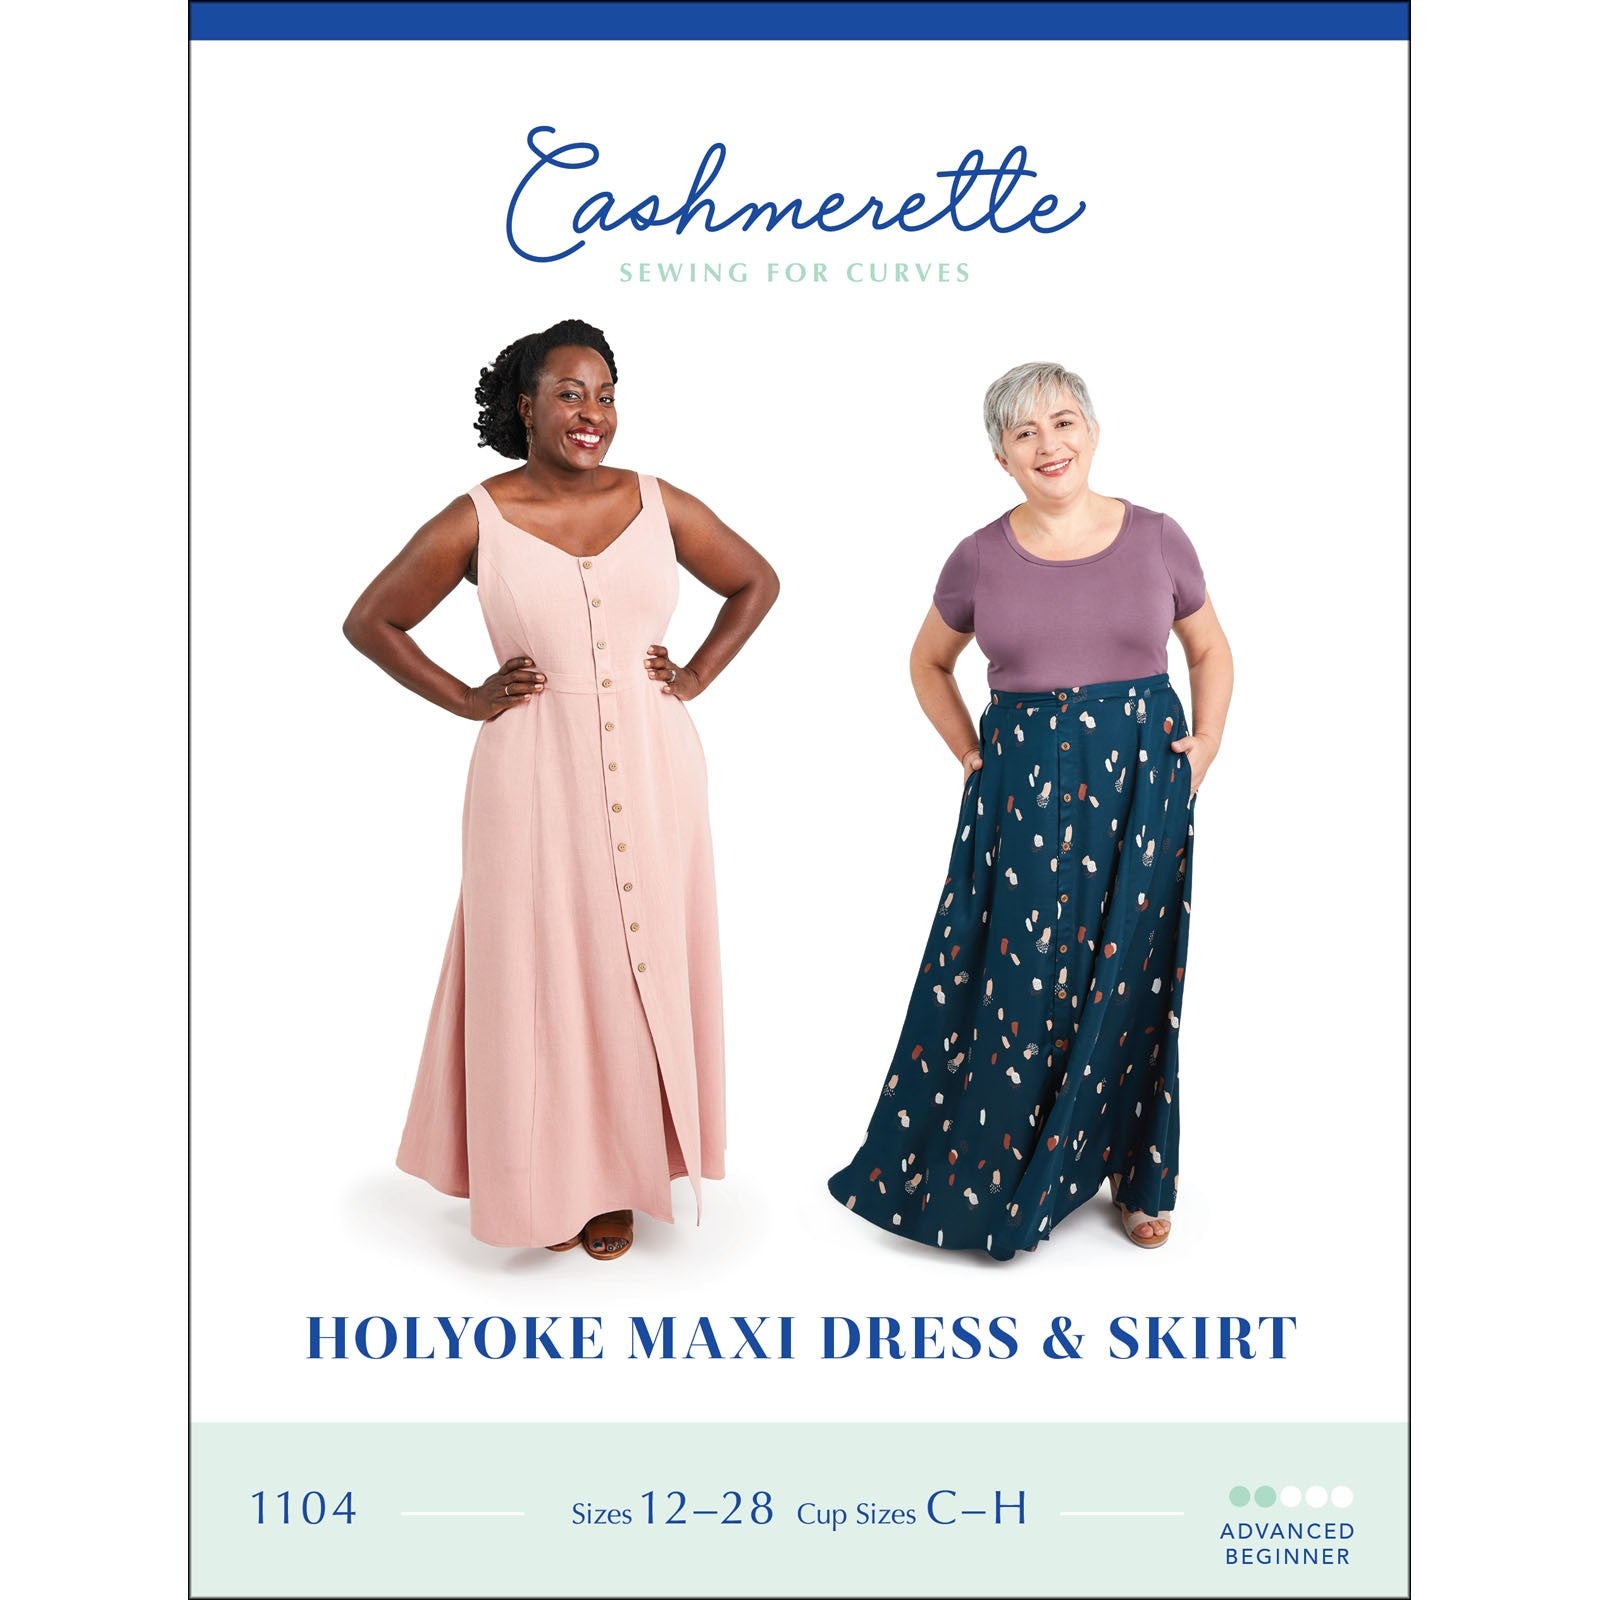 Holyoke Maxi Dress Cashmerette Printed Pattern